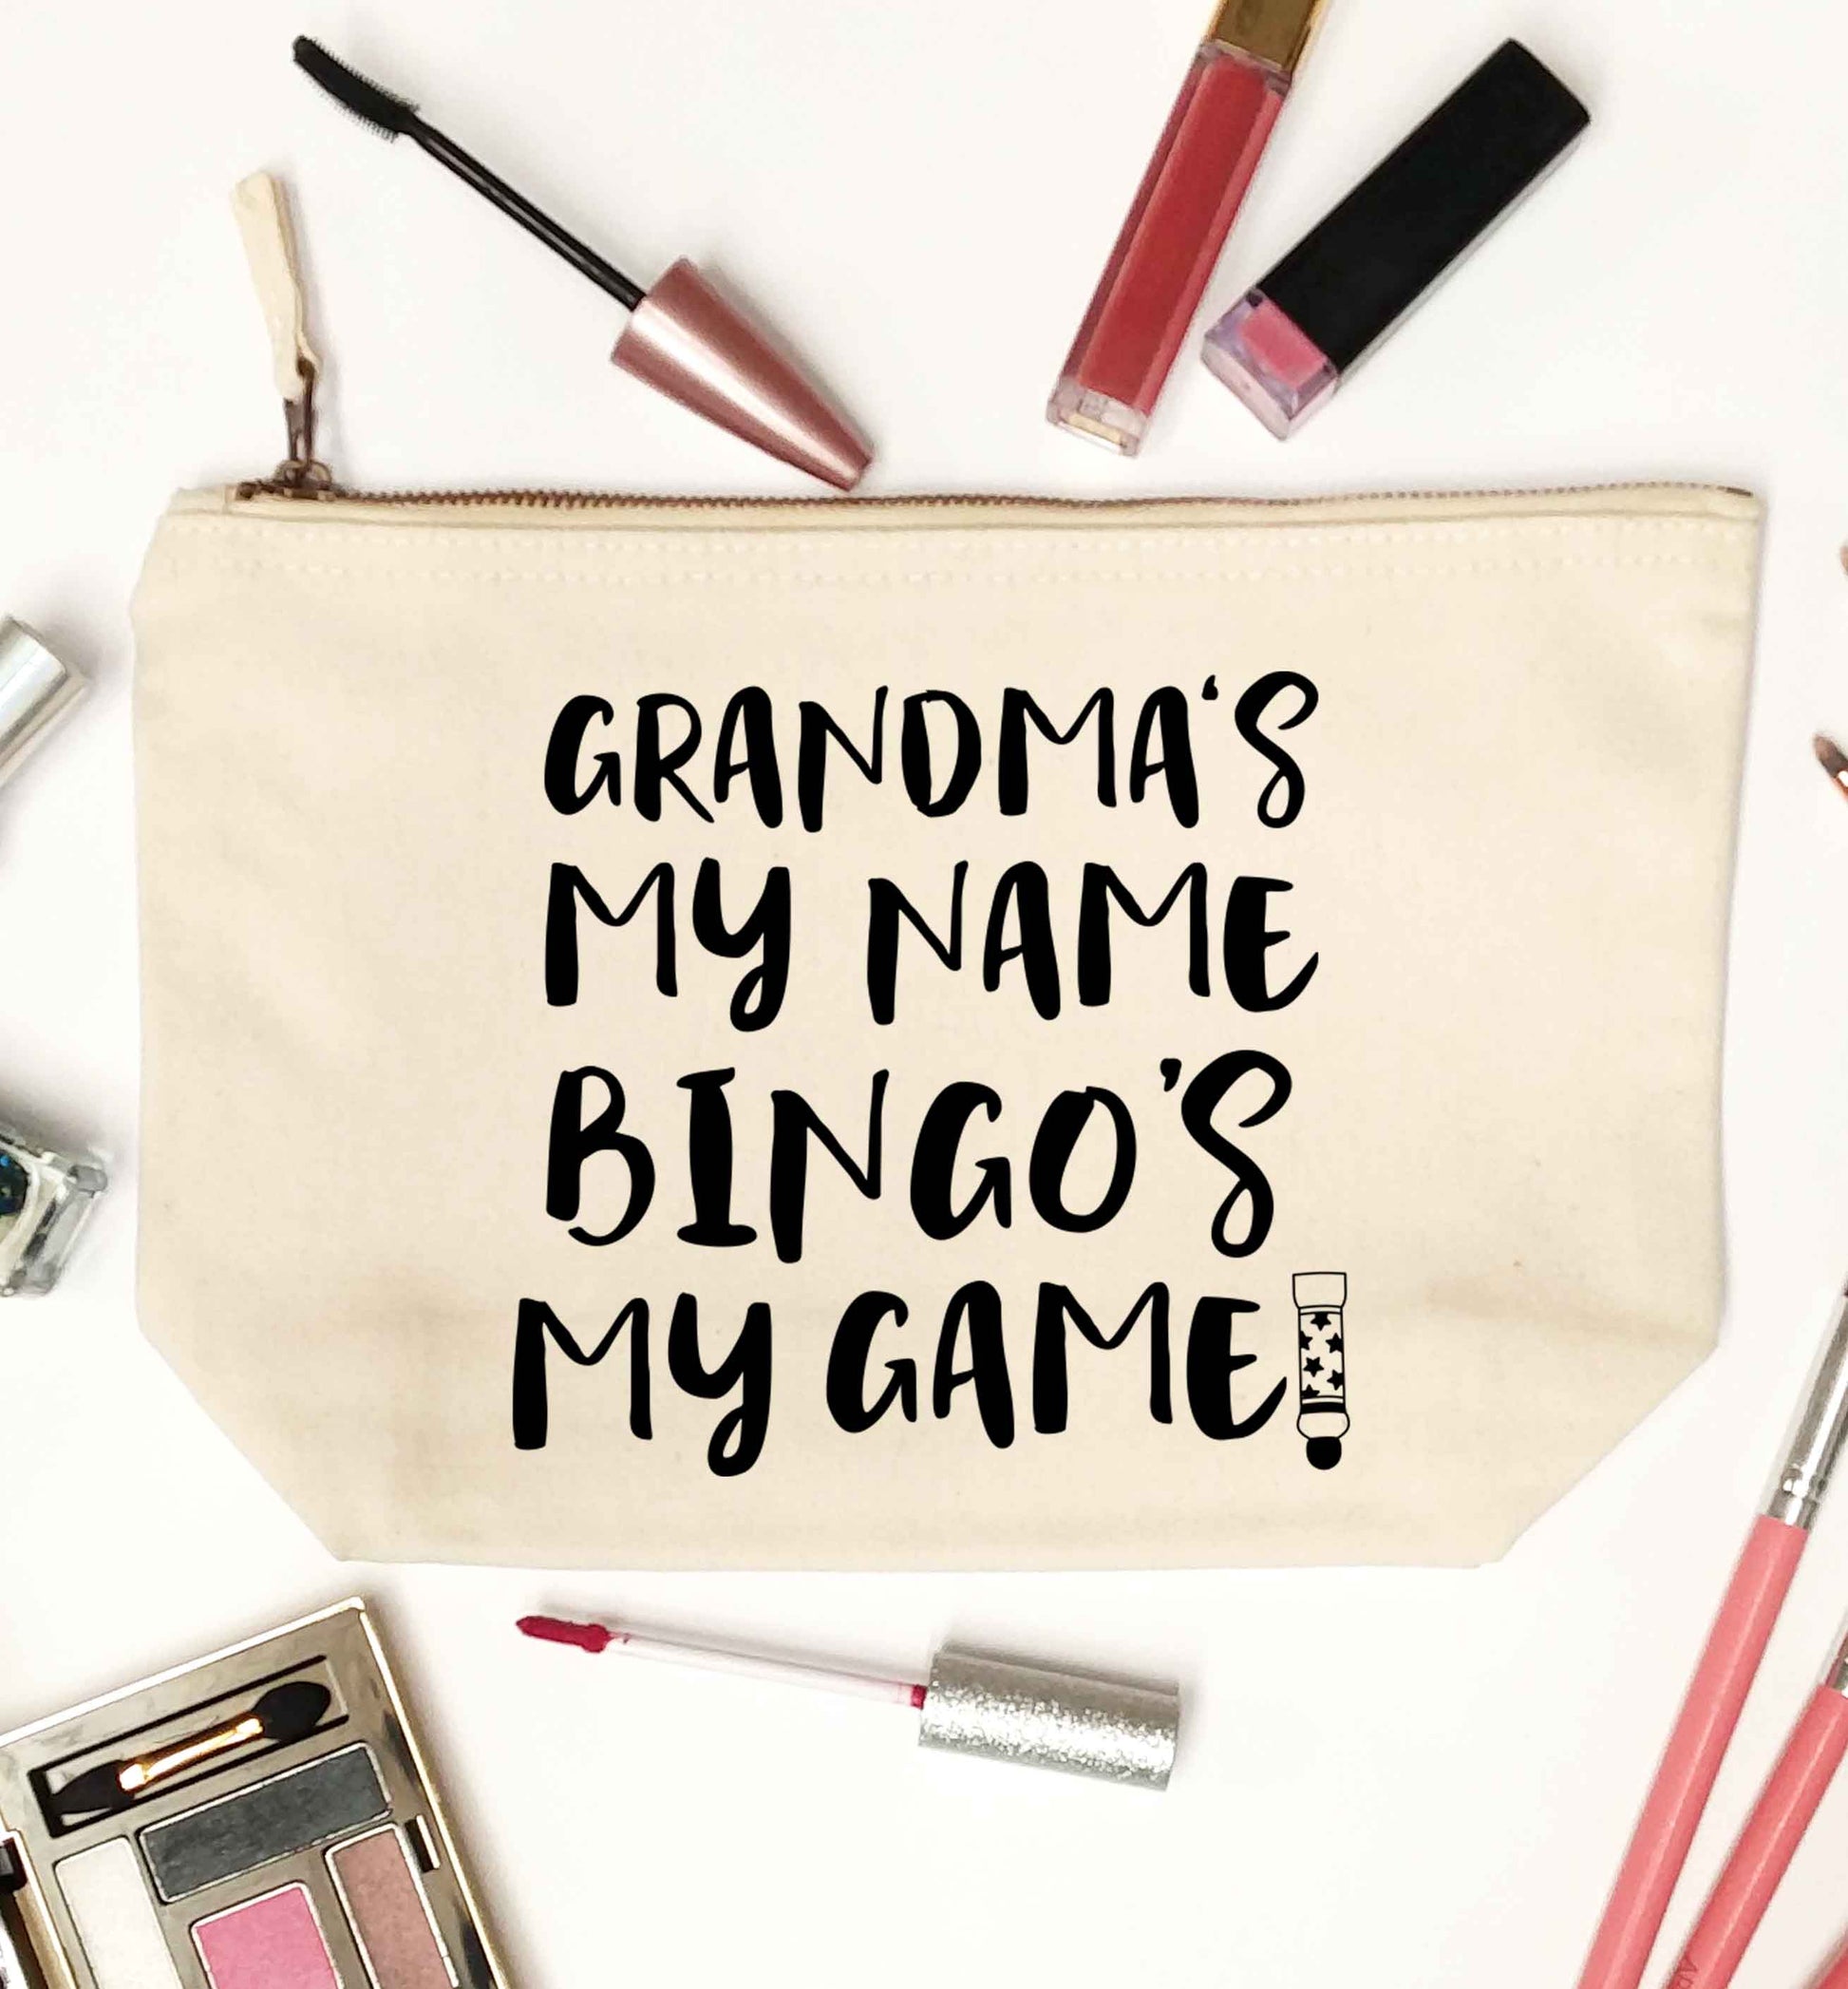 Grandma's my name bingo's my game! natural makeup bag